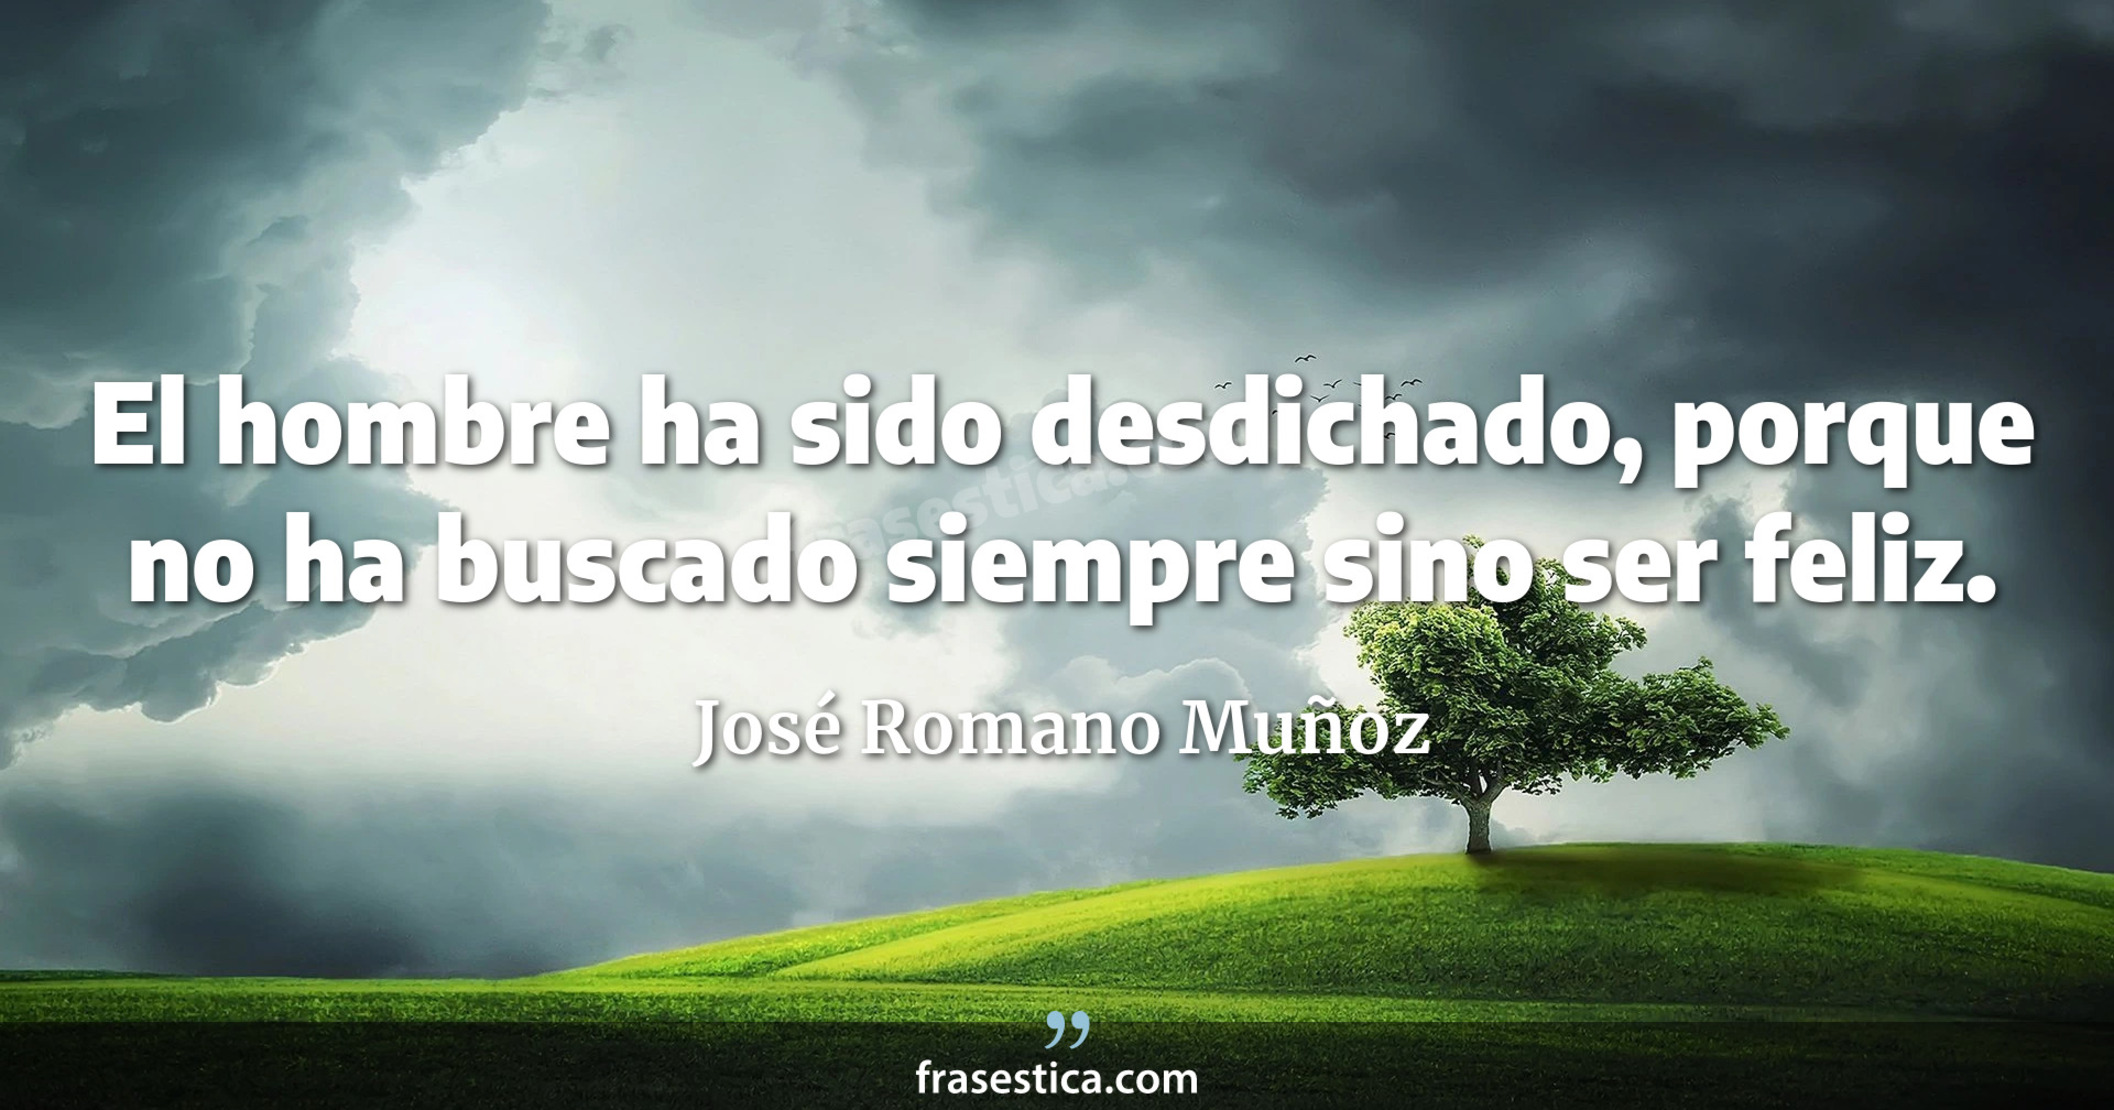 El hombre ha sido desdichado, porque no ha buscado siempre sino ser feliz. - José Romano Muñoz